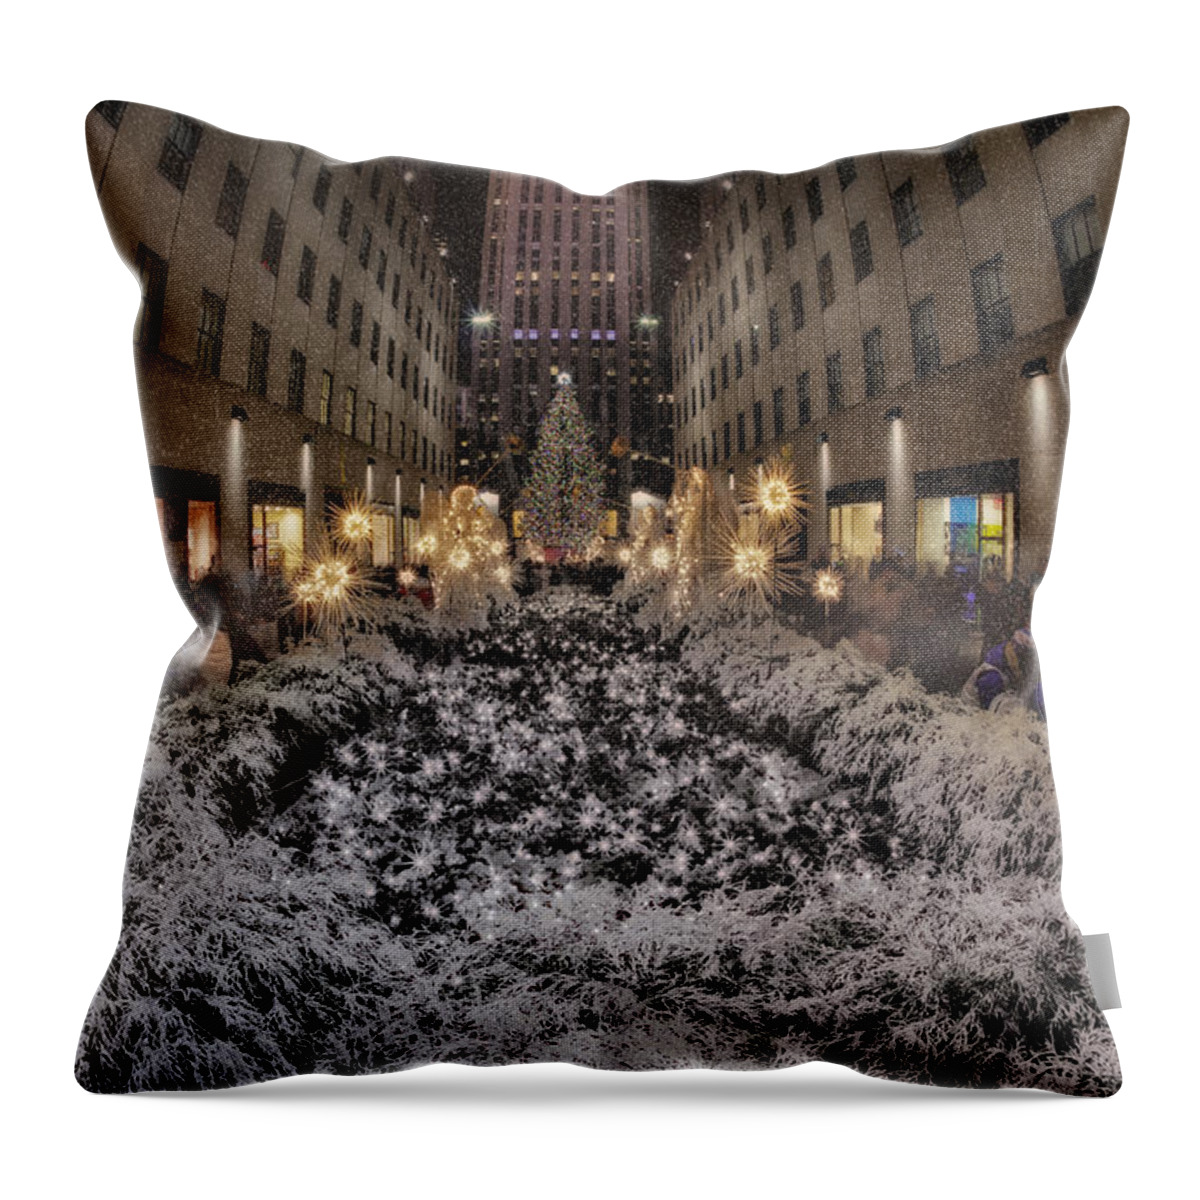 Rockefeller Center Throw Pillow featuring the photograph Rockefeller Center Christmas NYC #3 by Susan Candelario